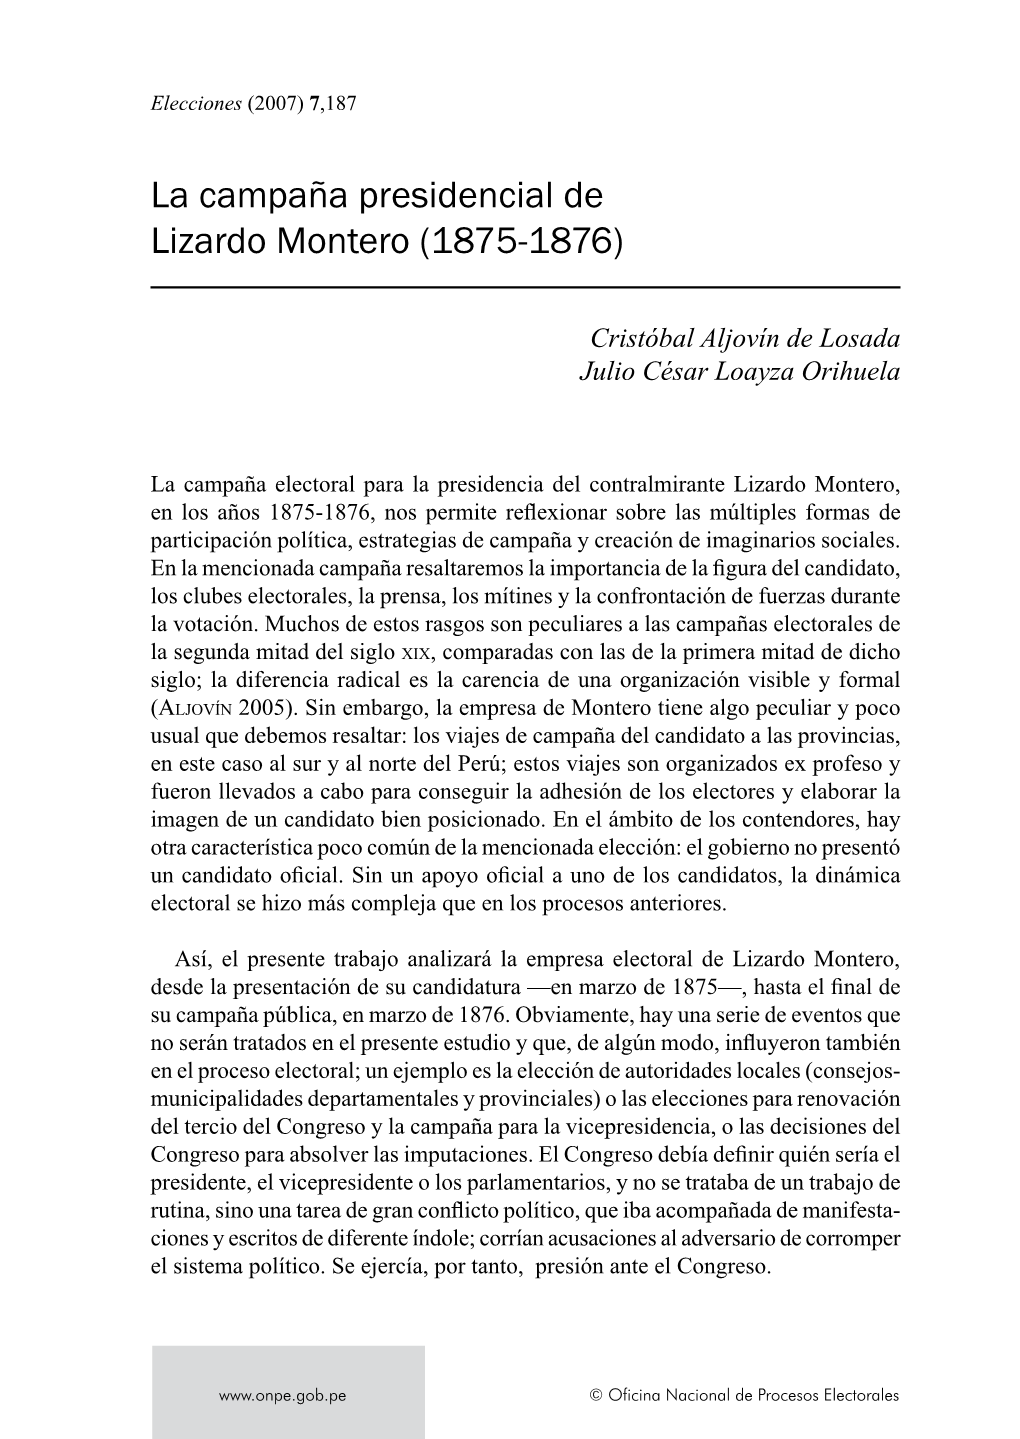 La Campaña Presidencial De Lizardo Montero (1875-1876)